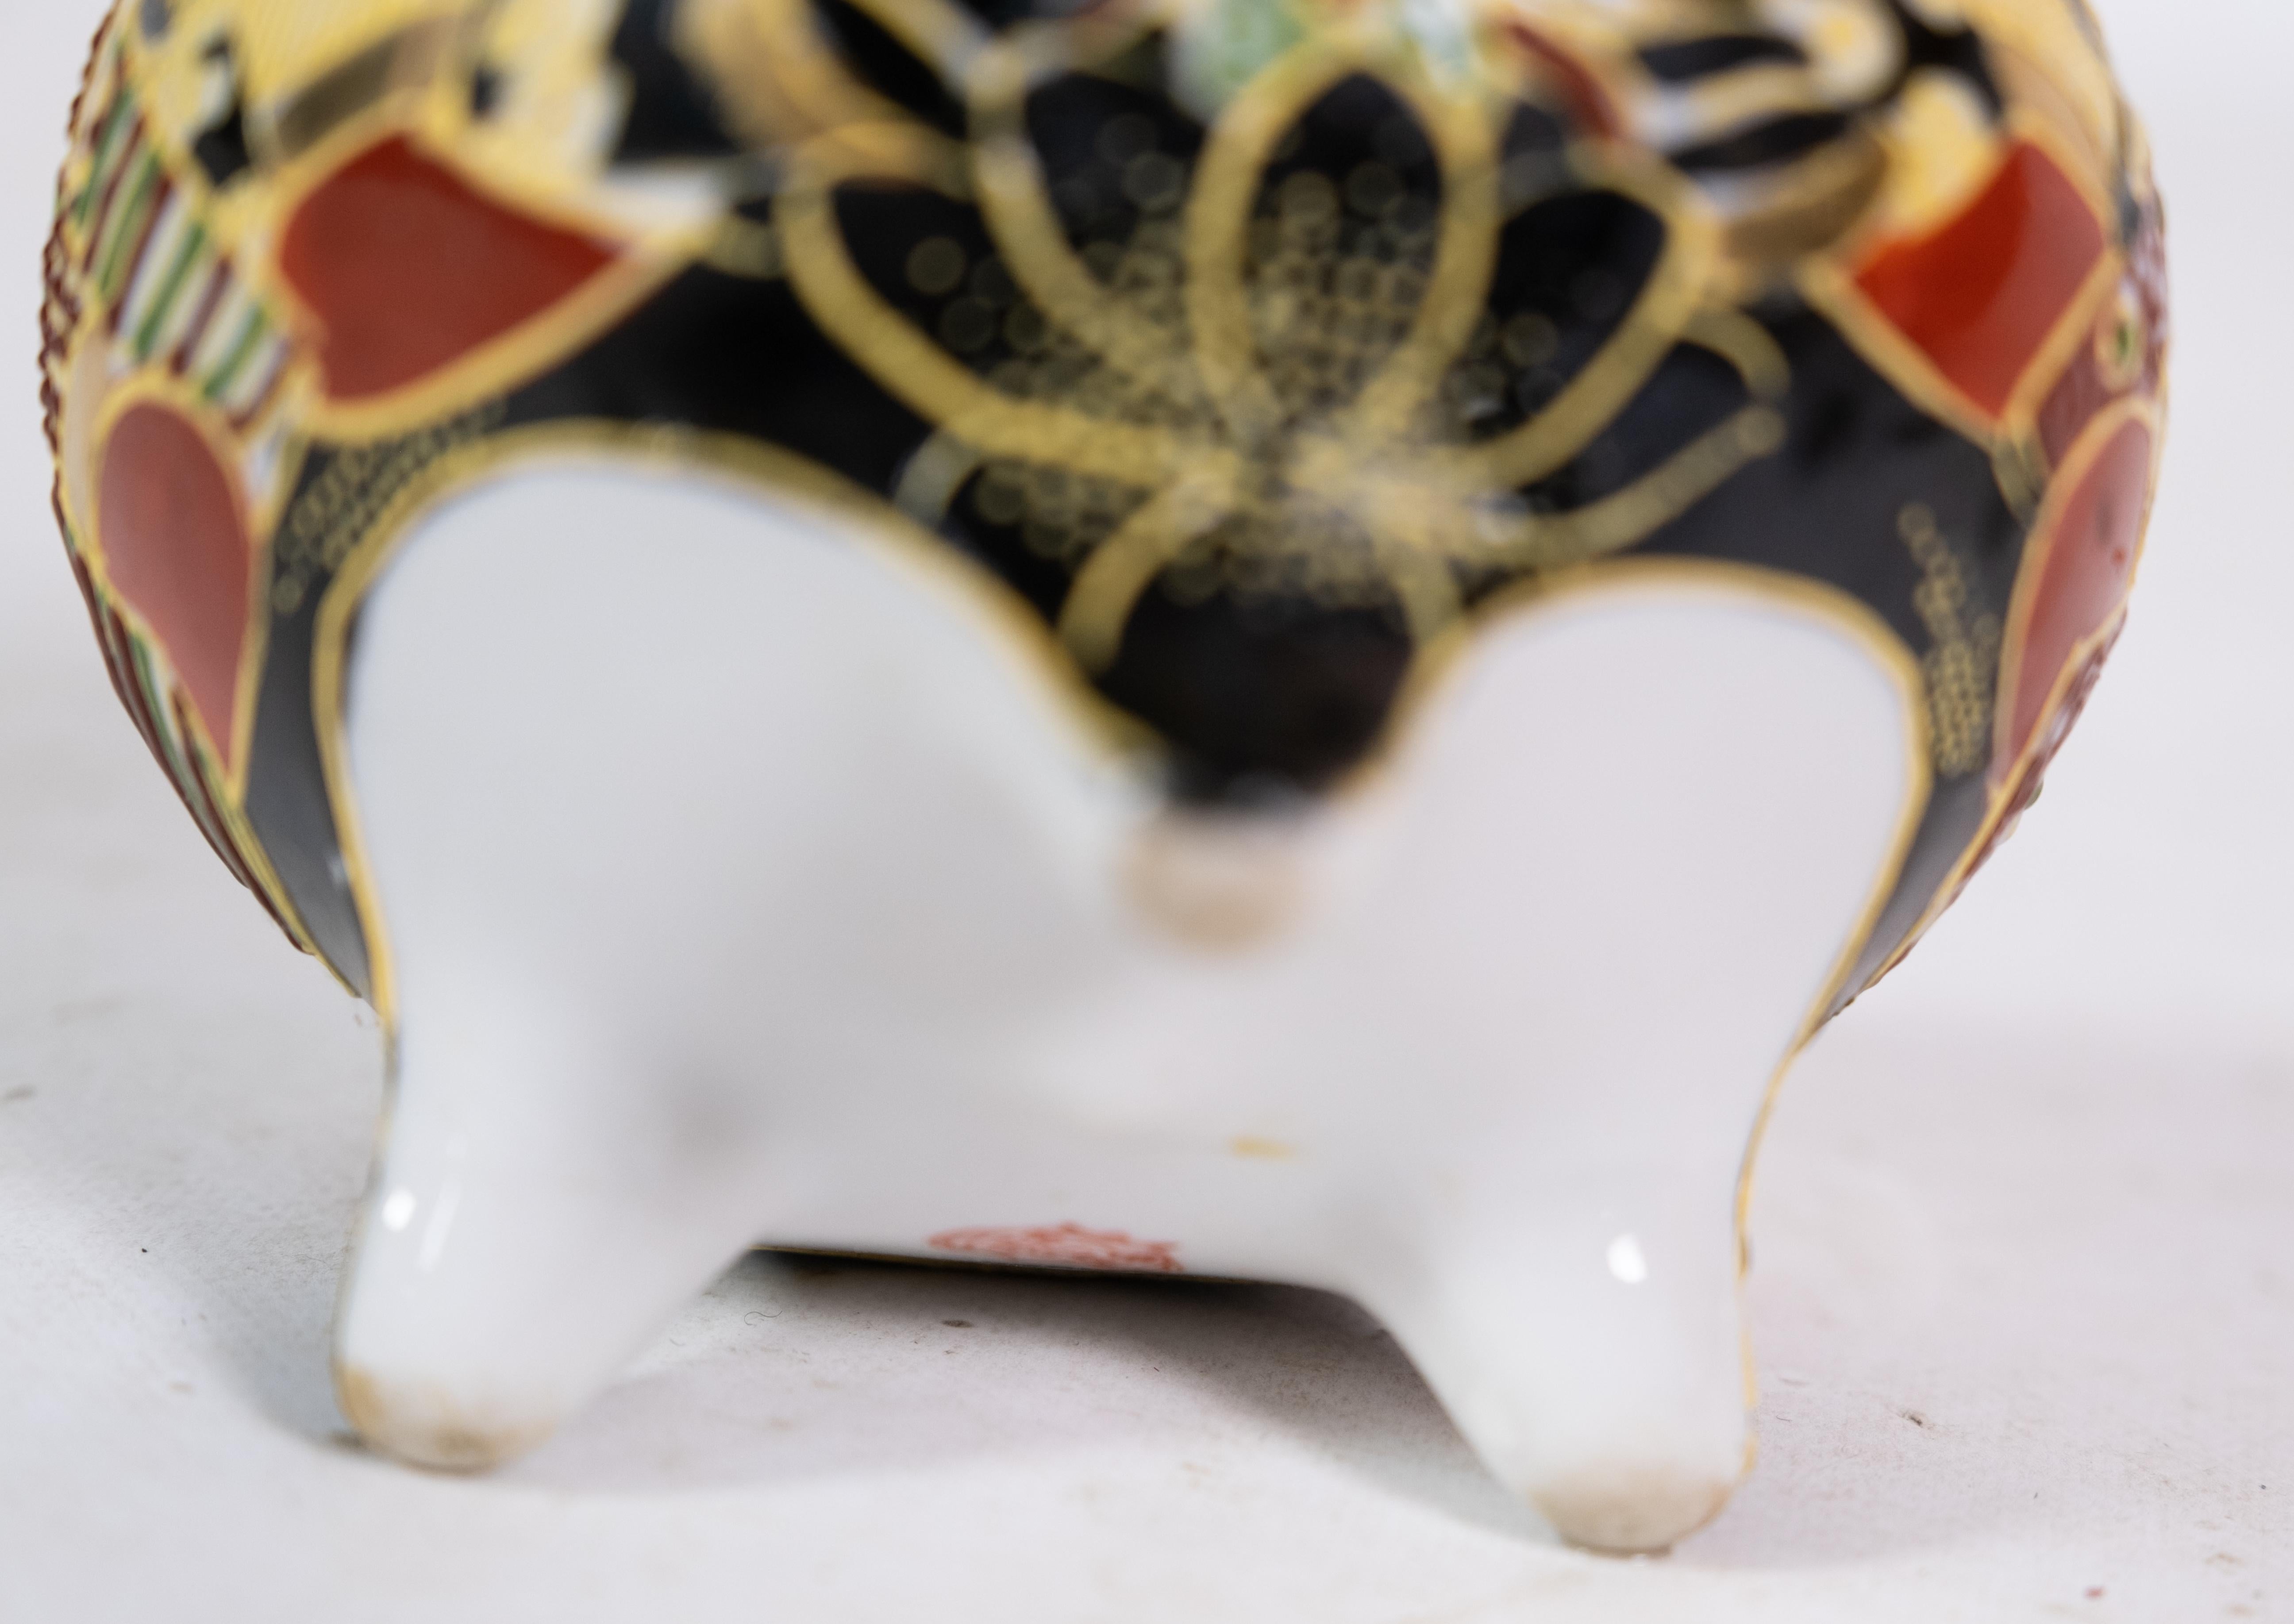 
Diese Porzellanschale japanischer Herkunft aus den 1940er Jahren ist ein schönes Beispiel für traditionelle japanische Handwerkskunst und Kunstfertigkeit. Die Schale weist aufwändige handgemalte Dekorationen auf, die eine reiche Palette von Farben